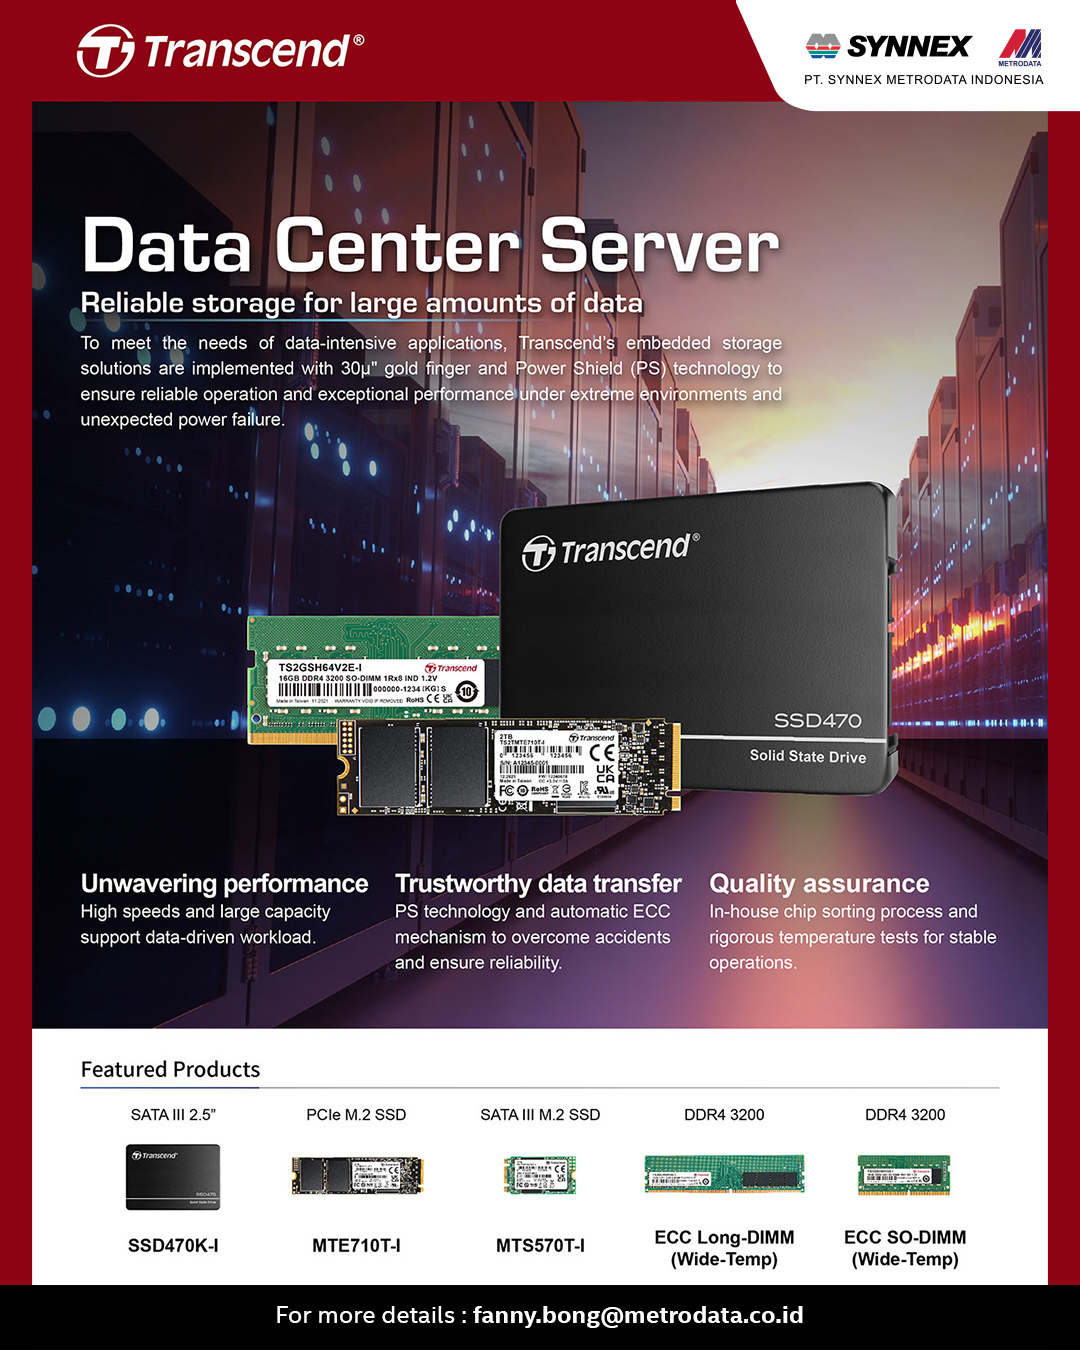 https://www.synnexmetrodata.com/wp-content/uploads/2022/12/Transcend-Data-Center-Server.jpg